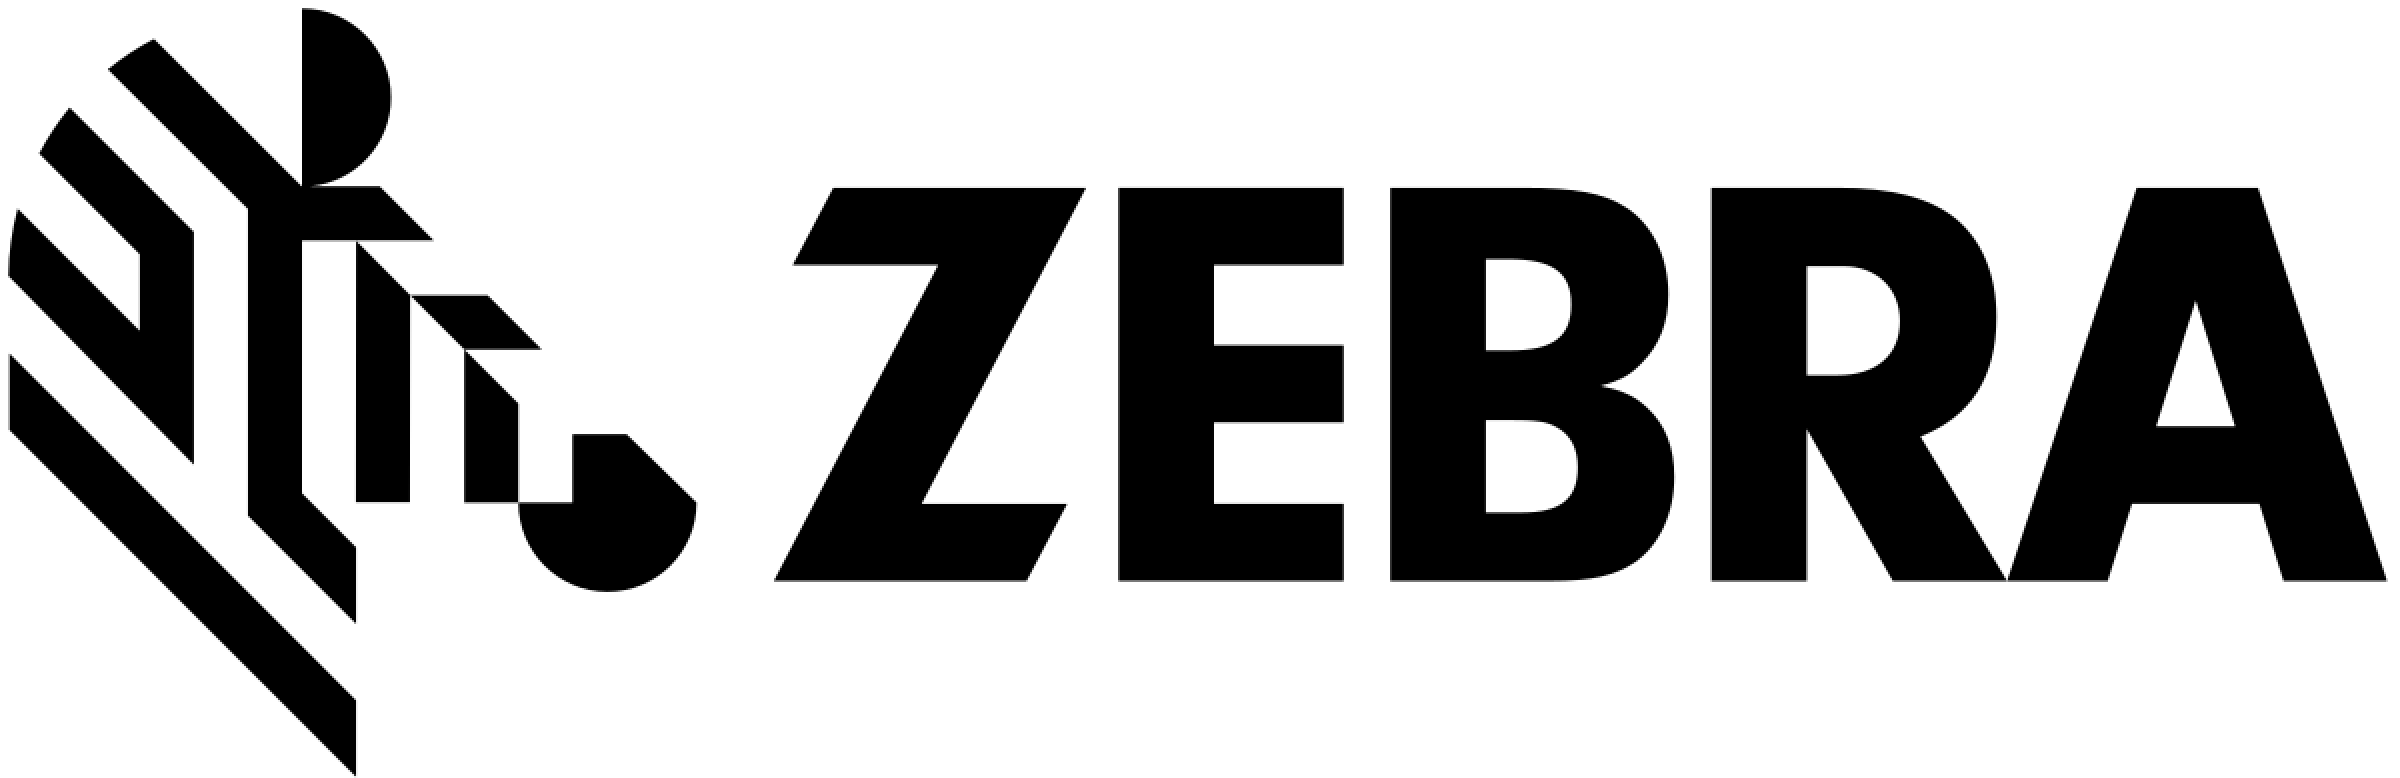 Zebra Technology Company Logo